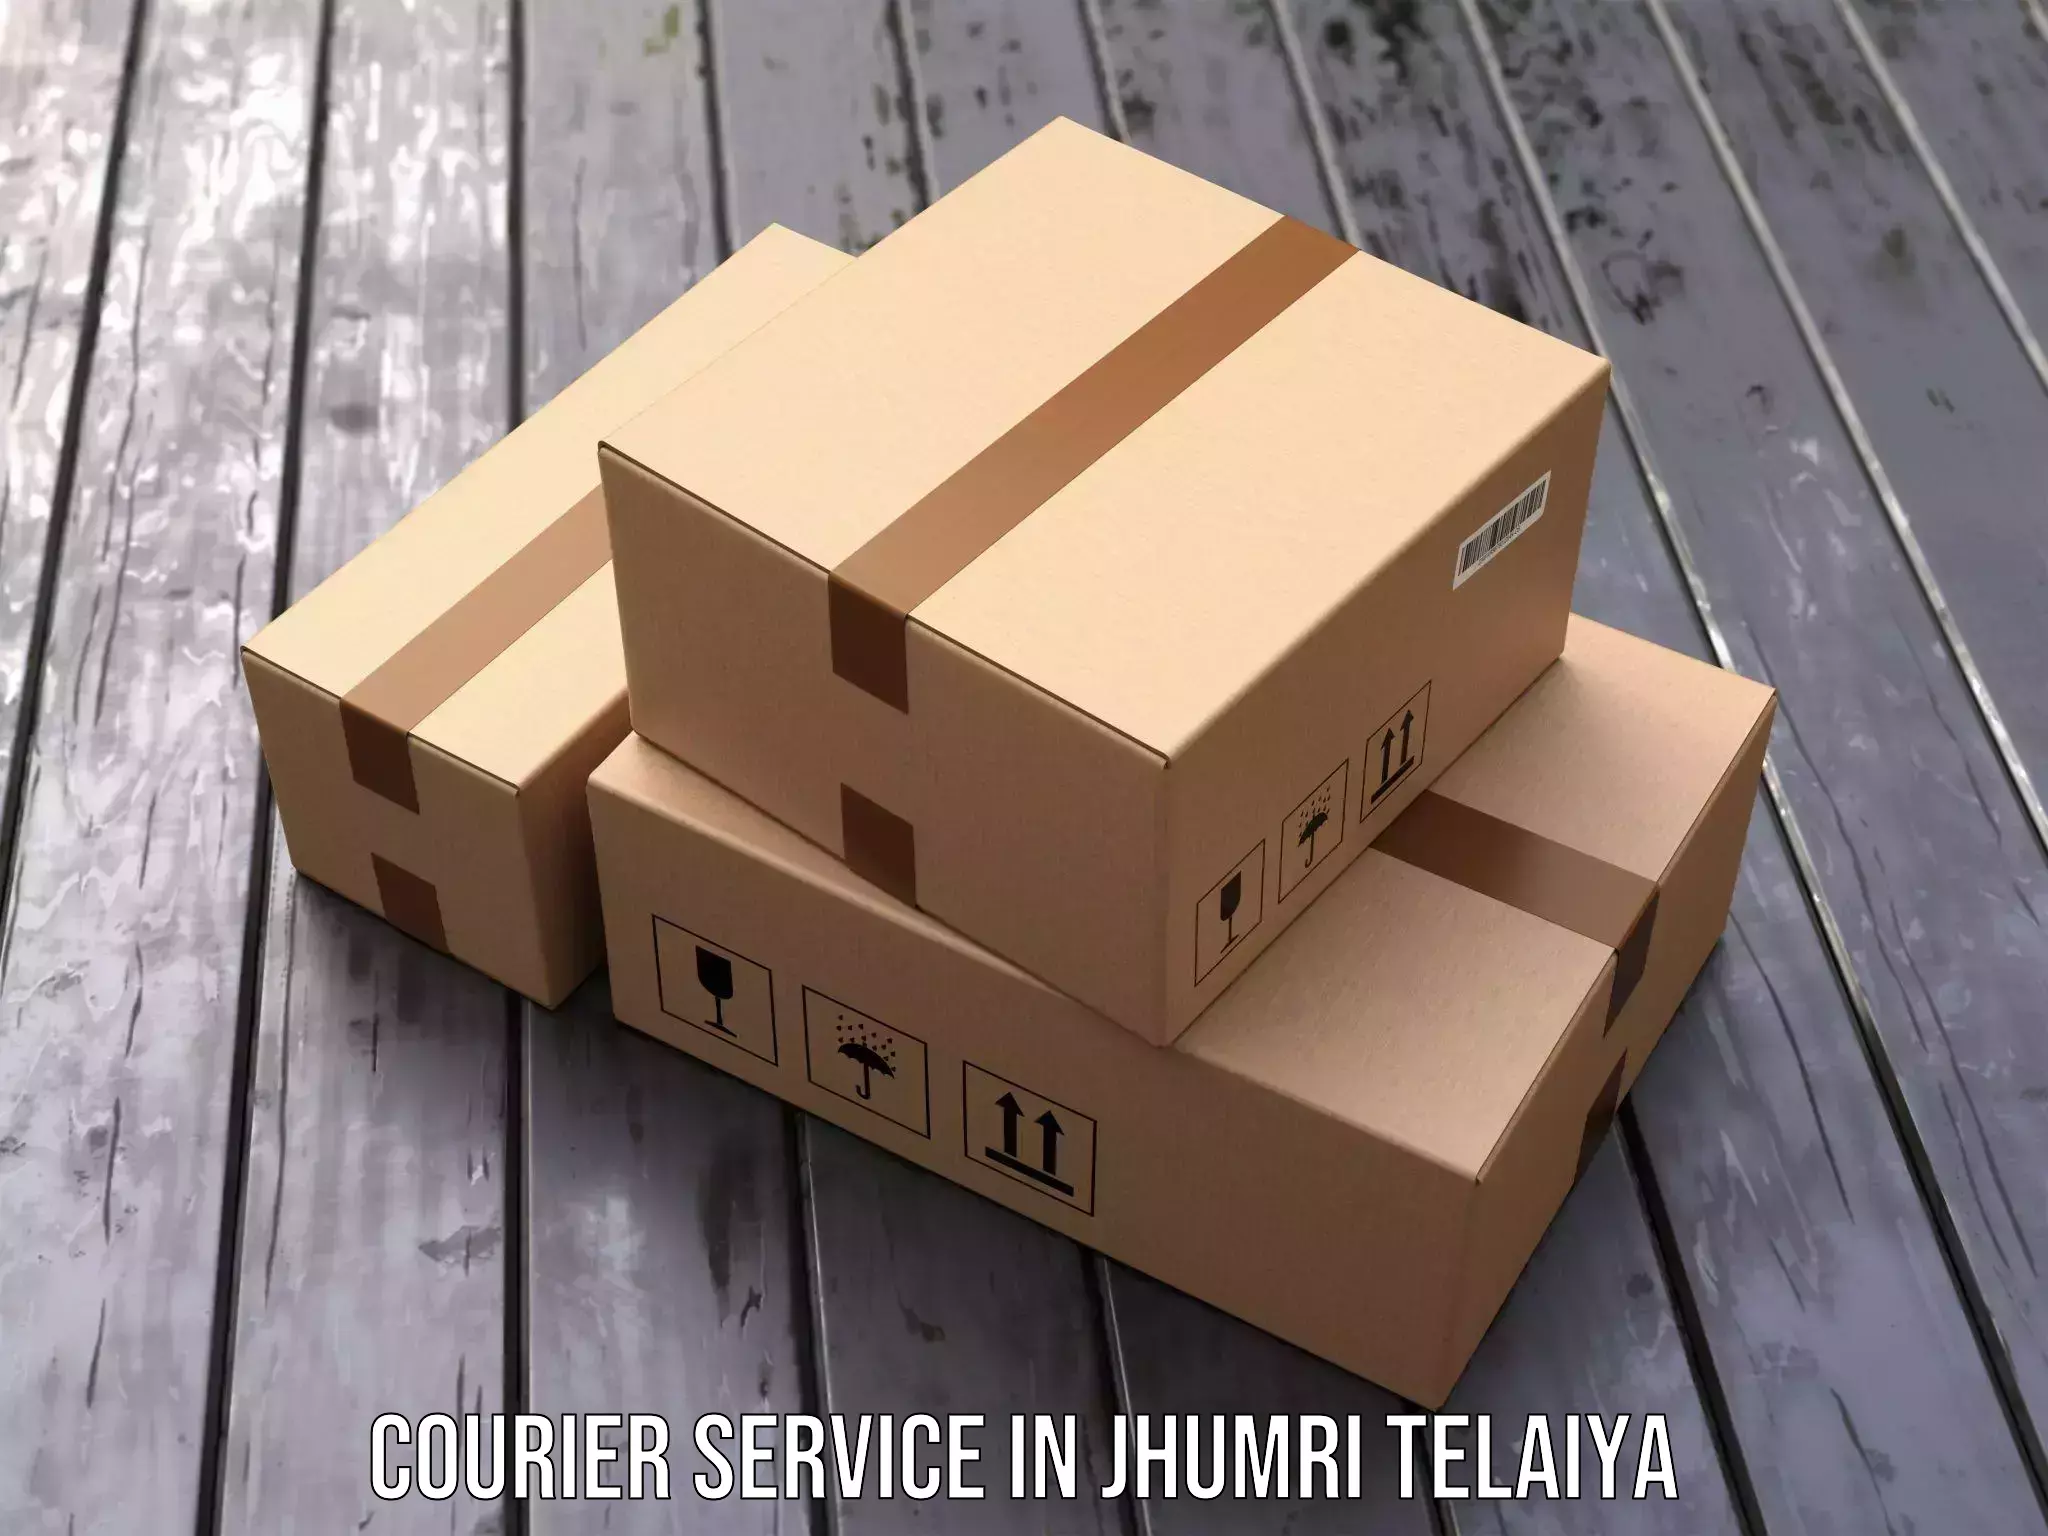 Individual parcel service in Jhumri Telaiya